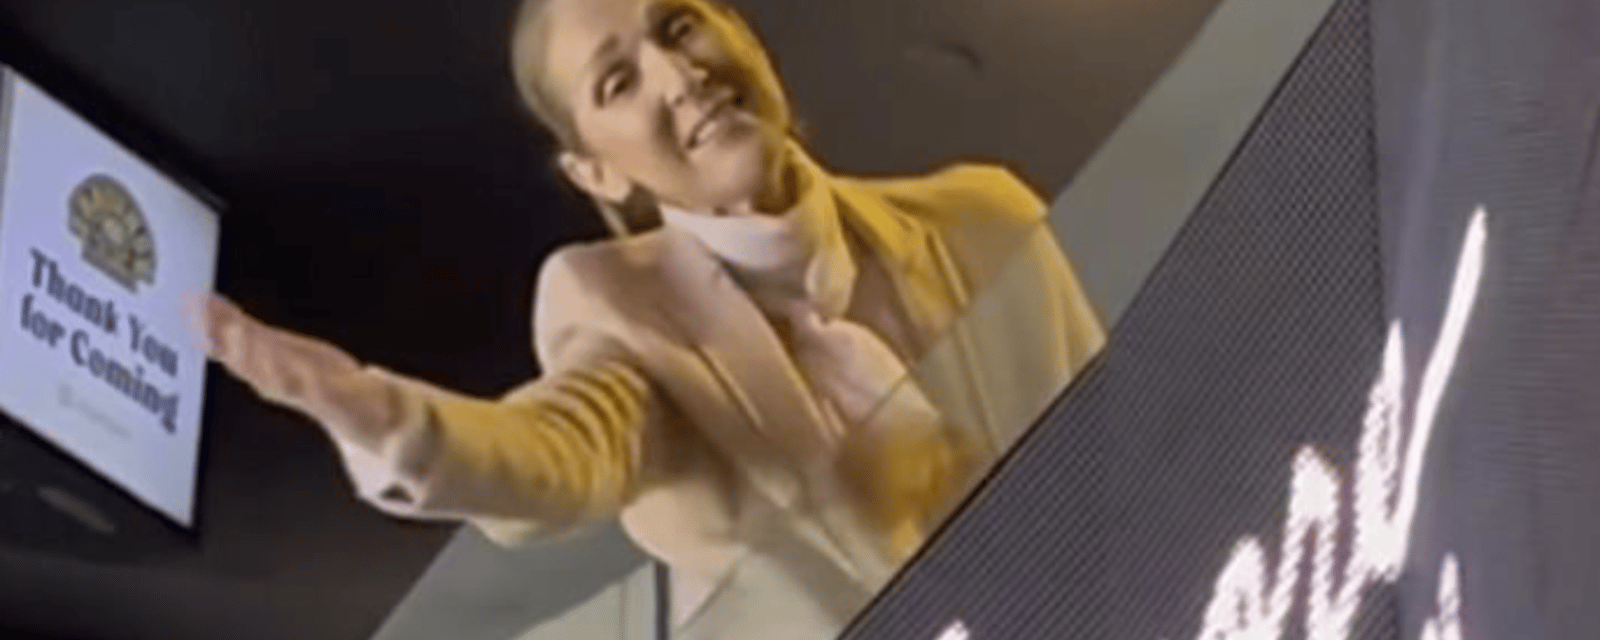 Céline Dion chante et s'éclate avec ses fans dans une nouvelle vidéo qui enflamme les médias sociaux